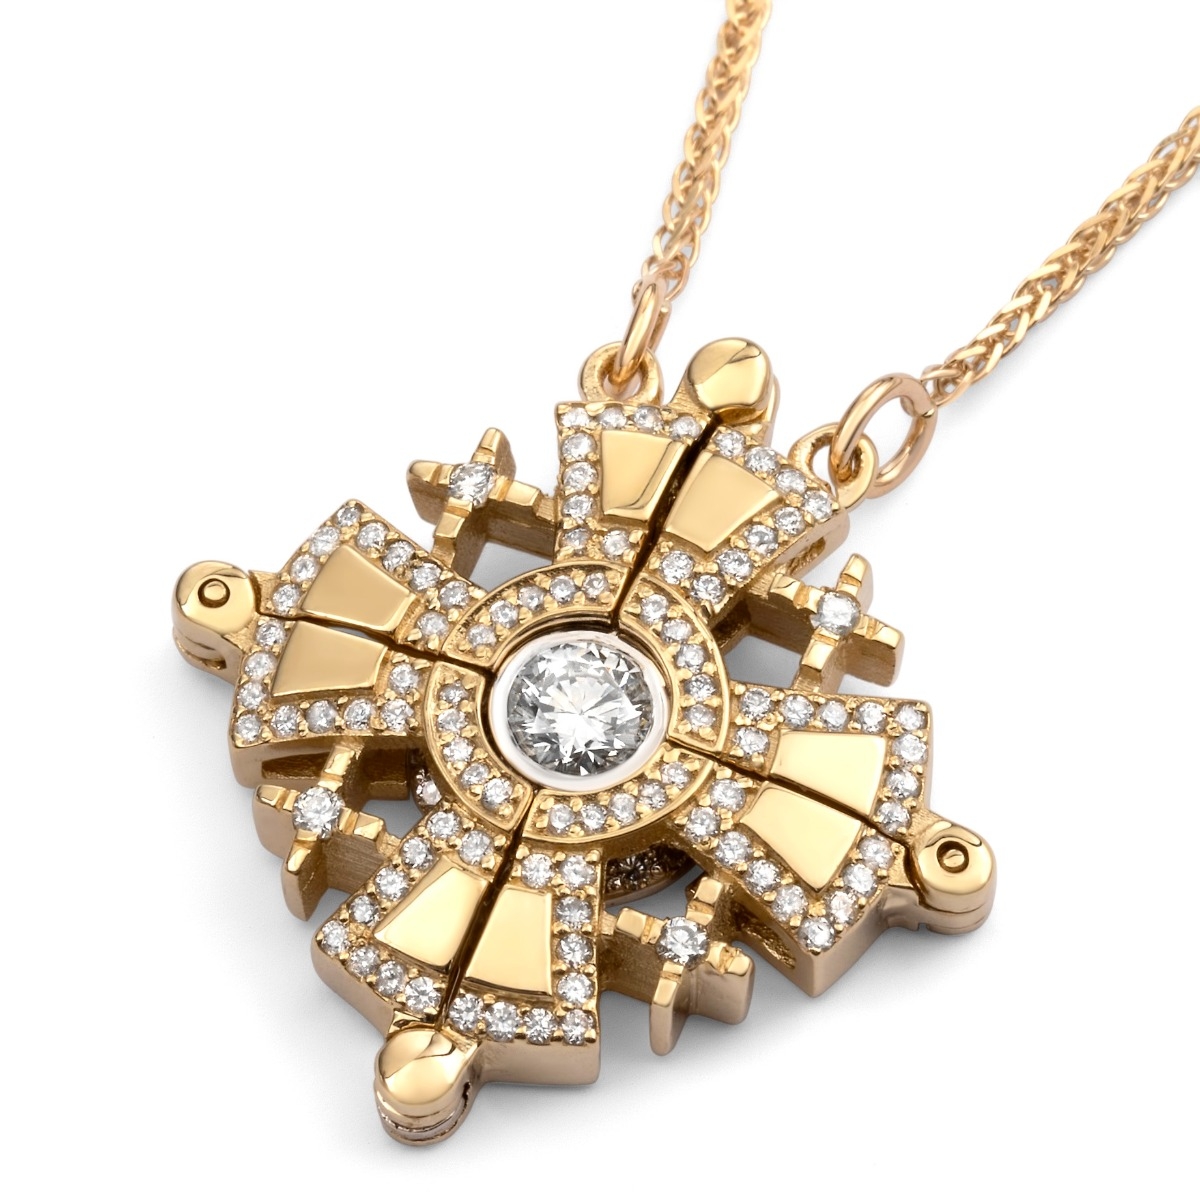 Anbinder Jewelry 14K Gold Jerusalem Cross Necklace with White Diamonds - 1